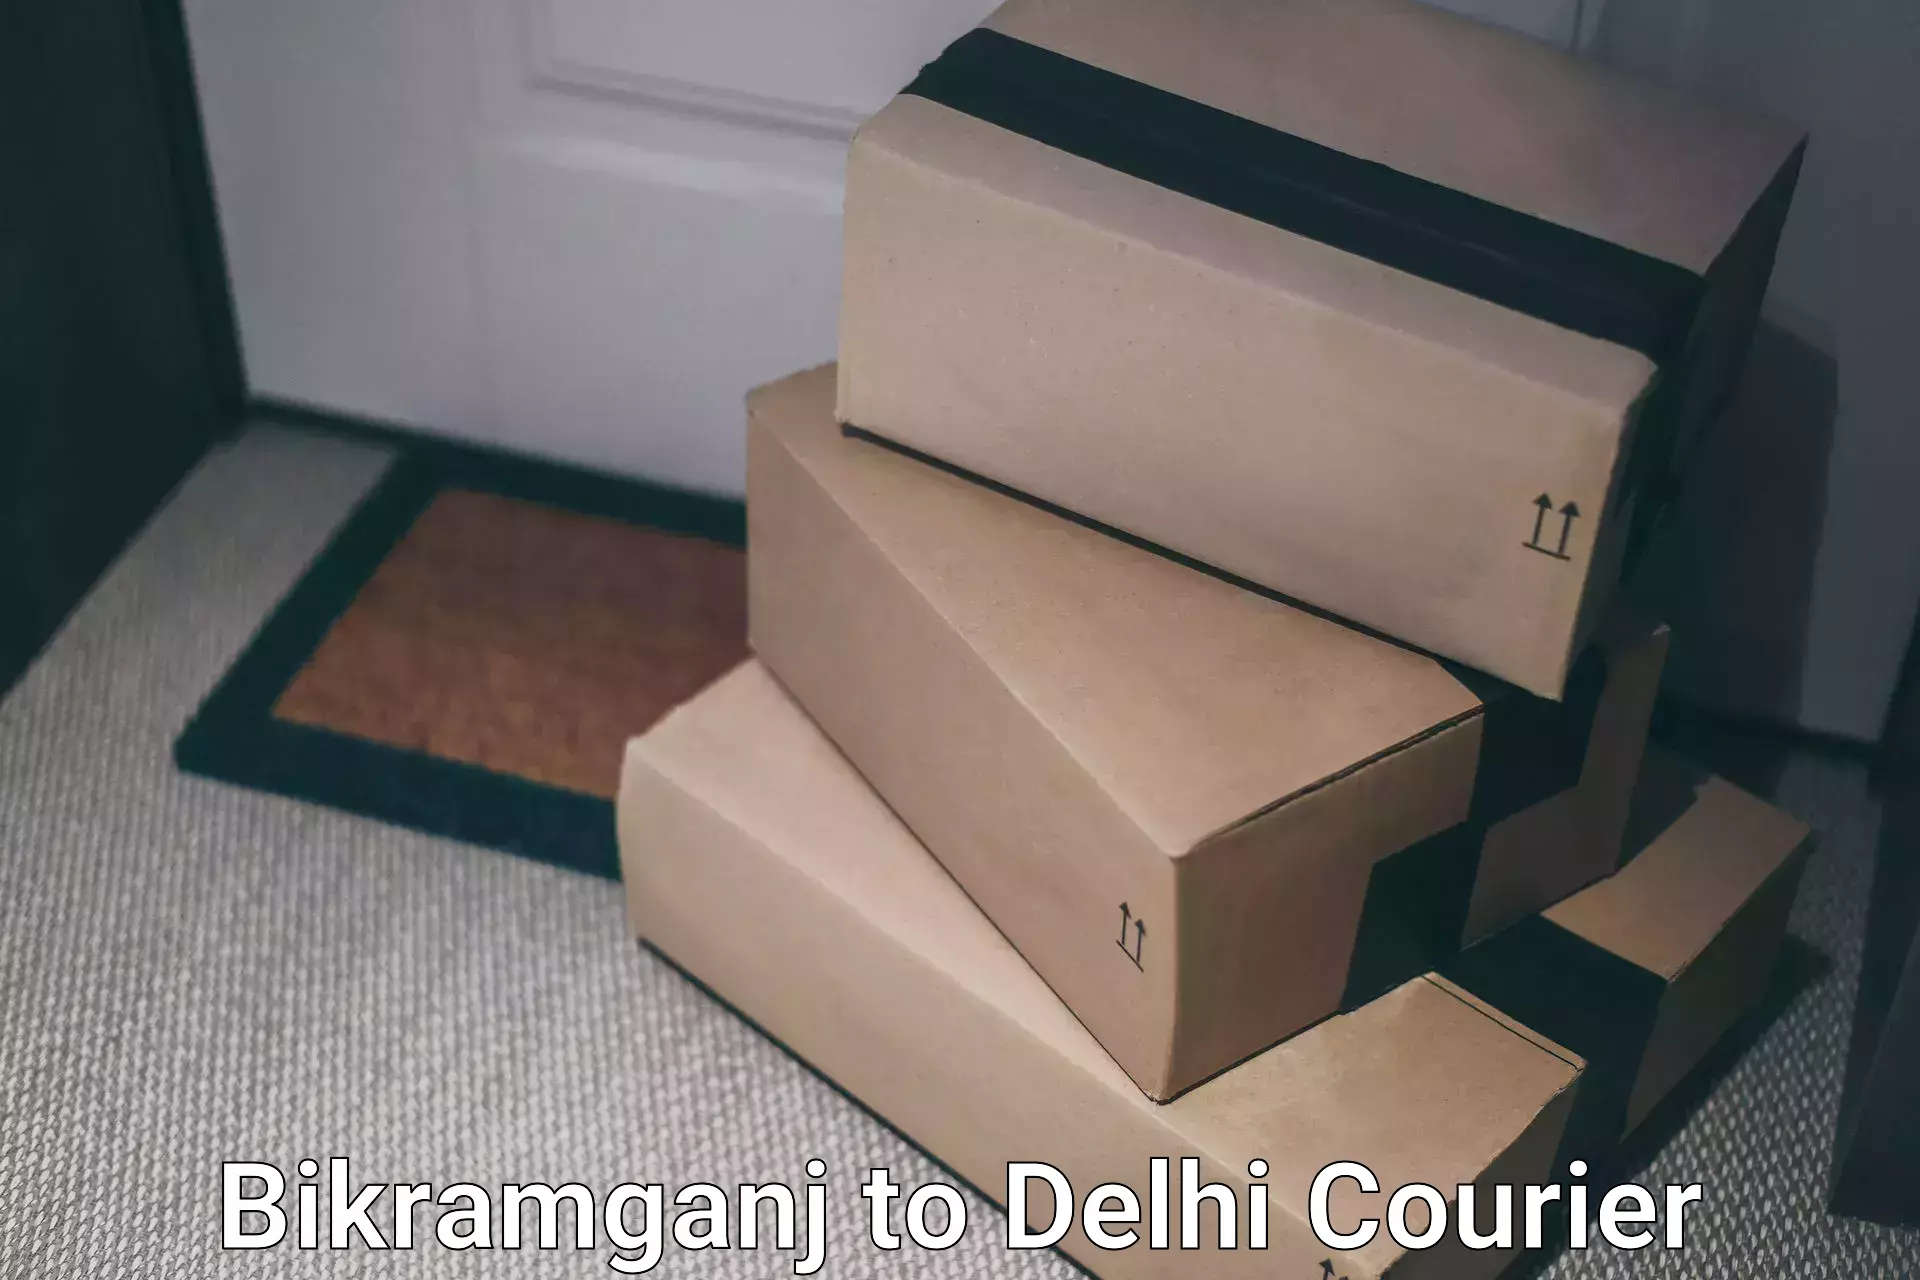 Ground shipping Bikramganj to University of Delhi